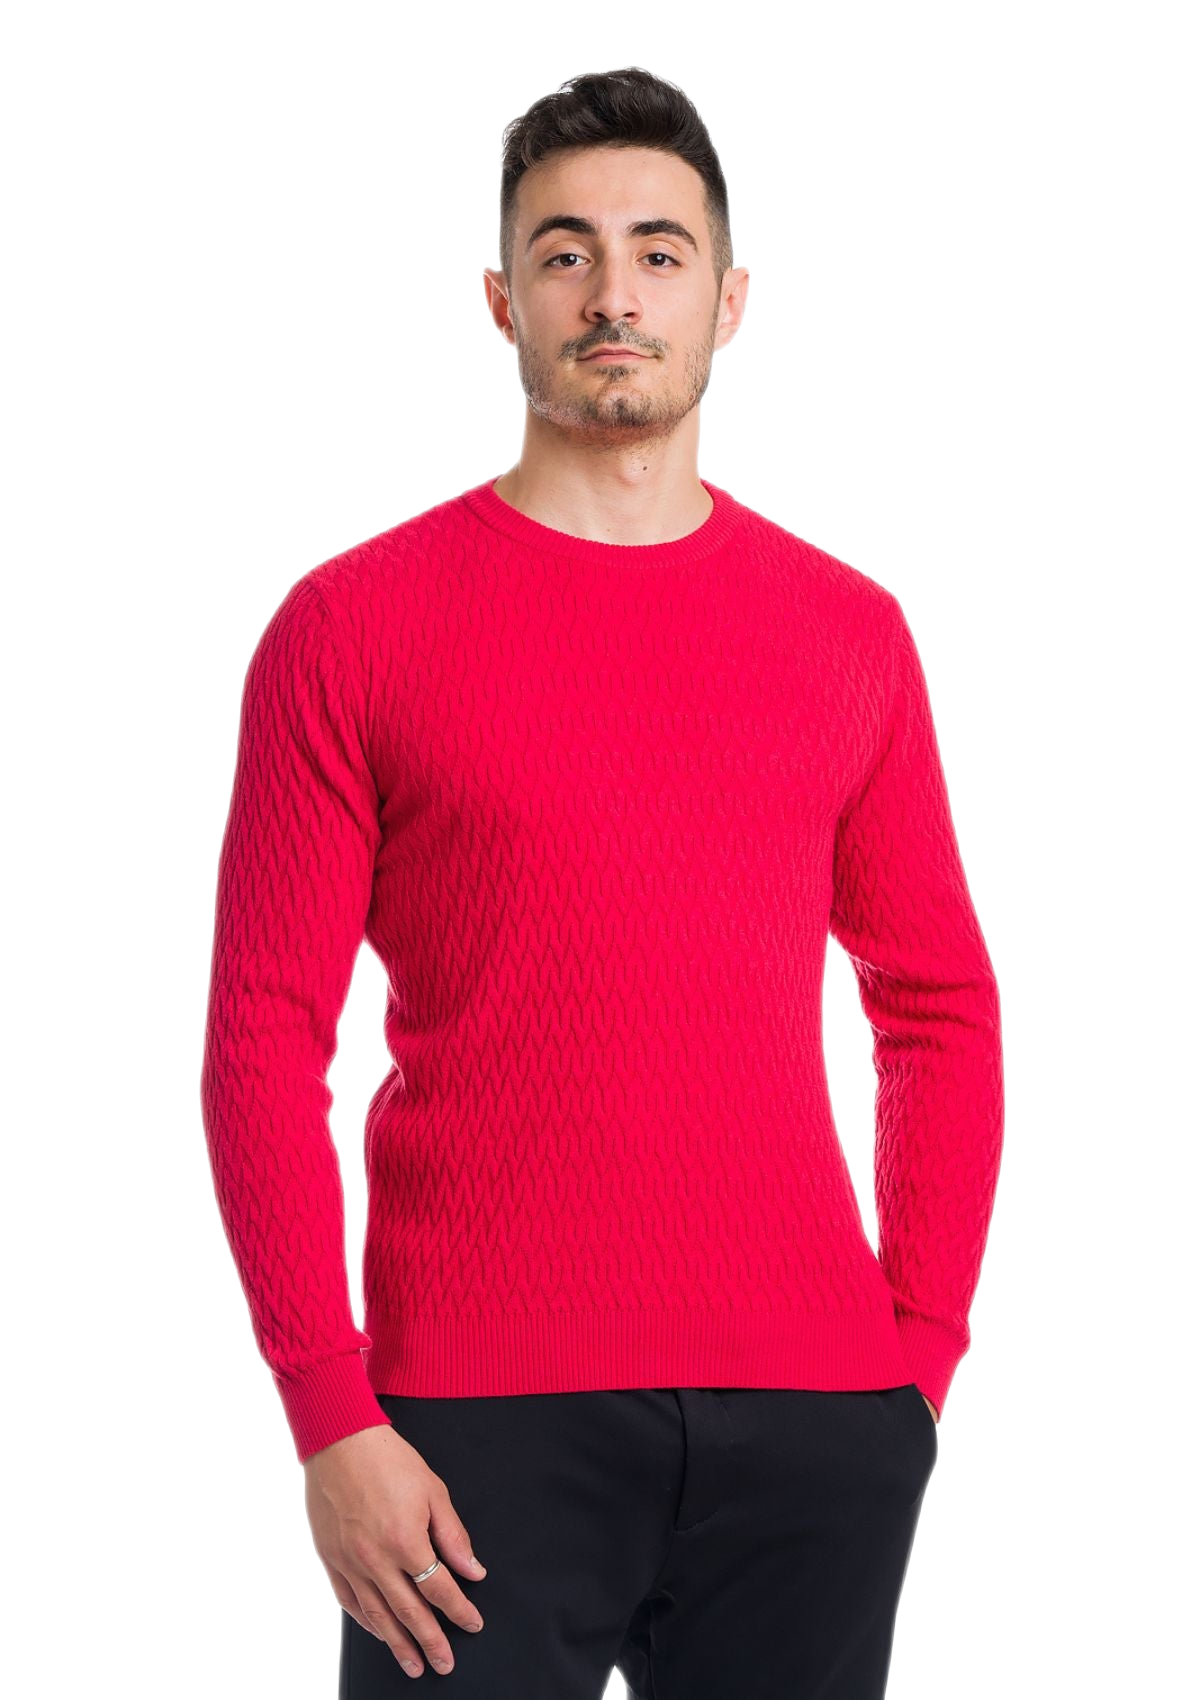 maglia uomo leggera in cotone e cashmere rossa